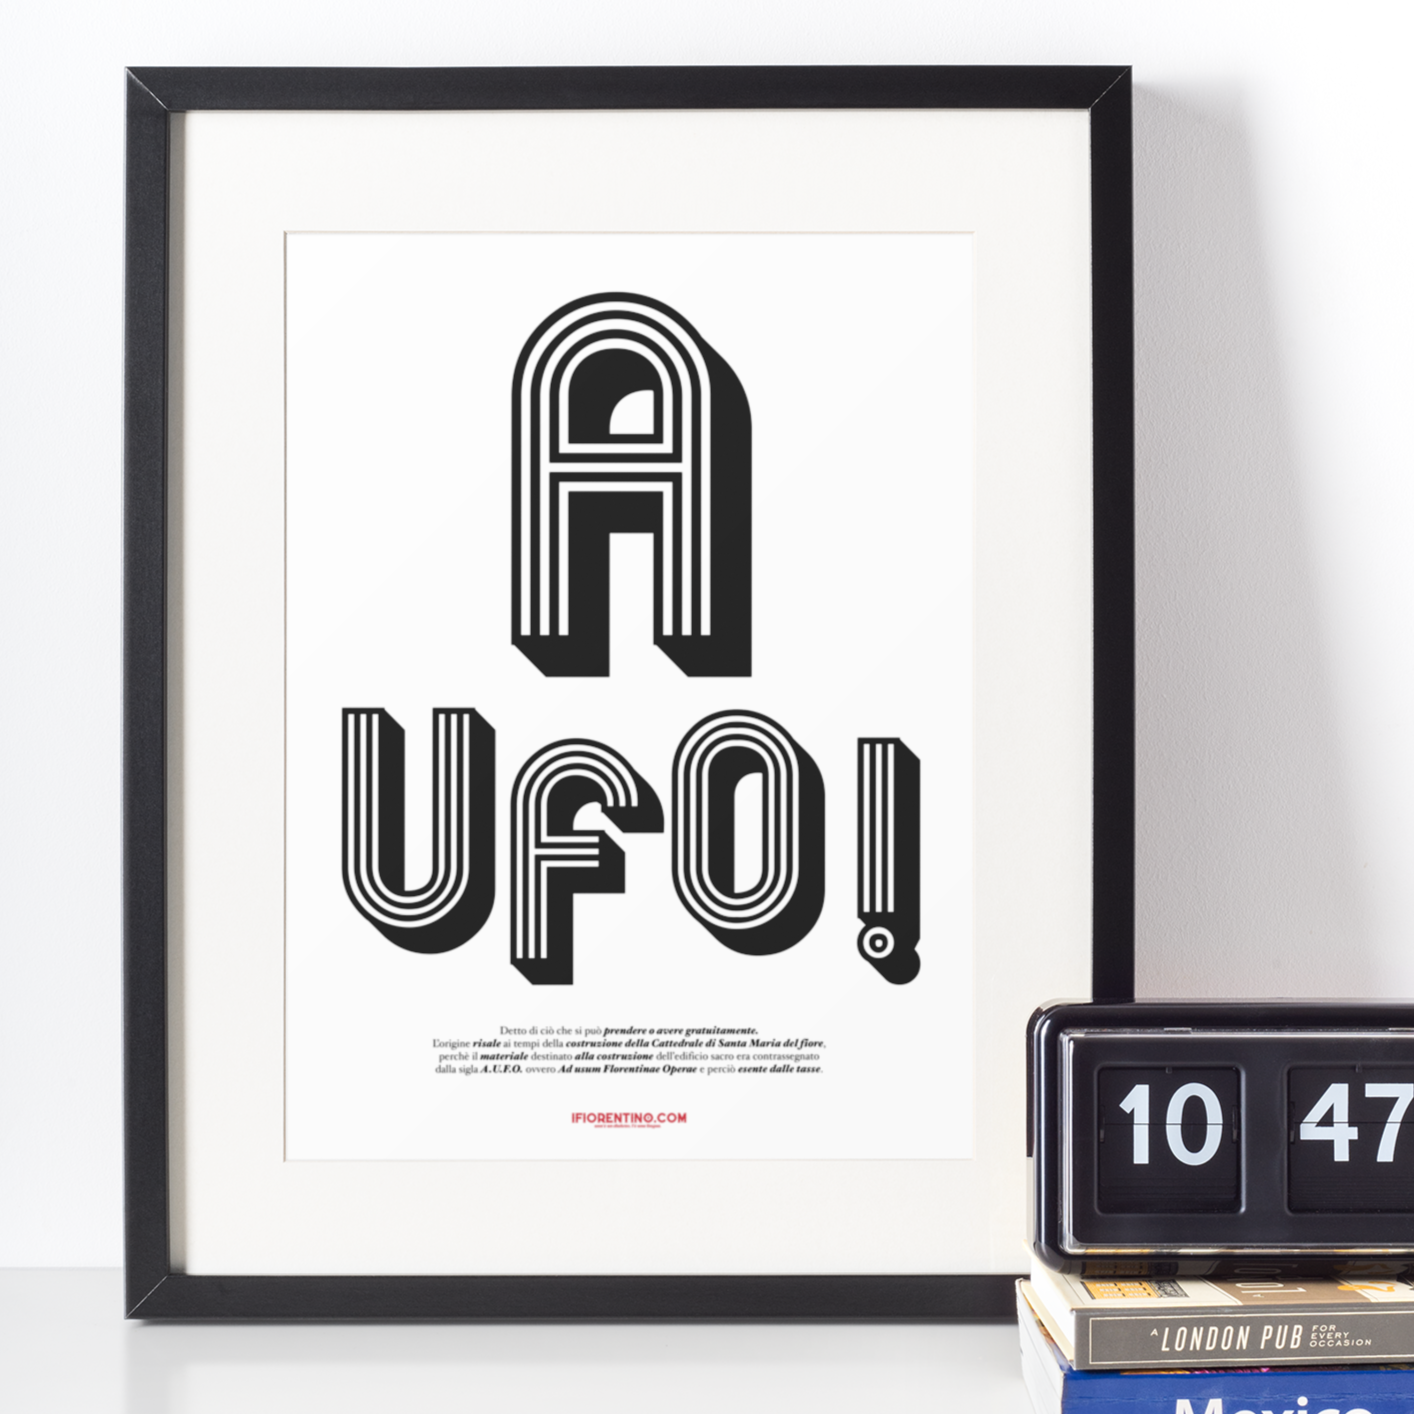 A UFO! - poster fiorentini - poster firenze - regalo fiorentino - fiorentino  - foppeddittelo